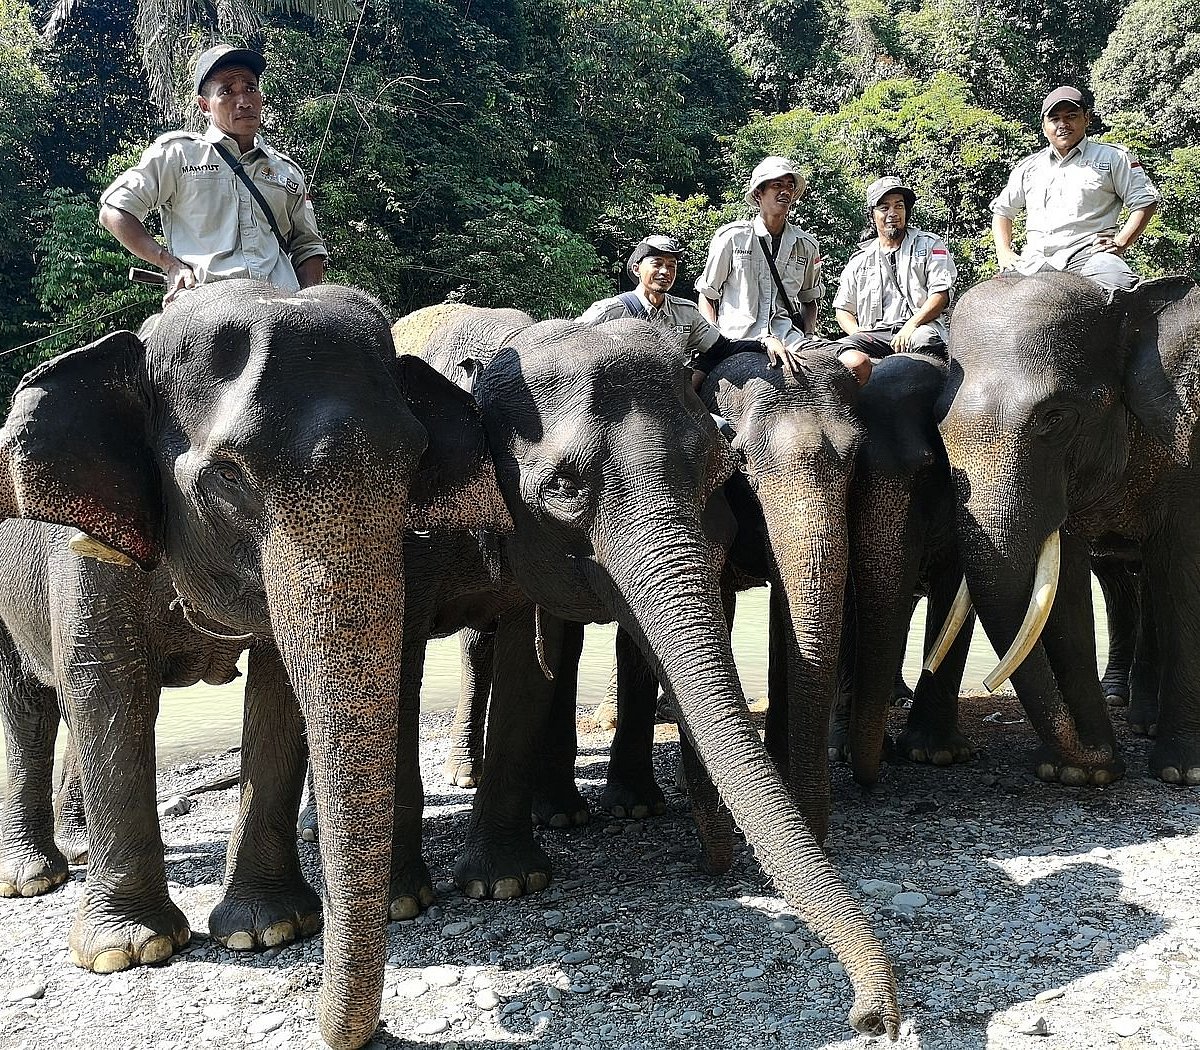 Элефант Камп. Слон лагерь. Катание на слонах (Elephant Camp) Пхукет.